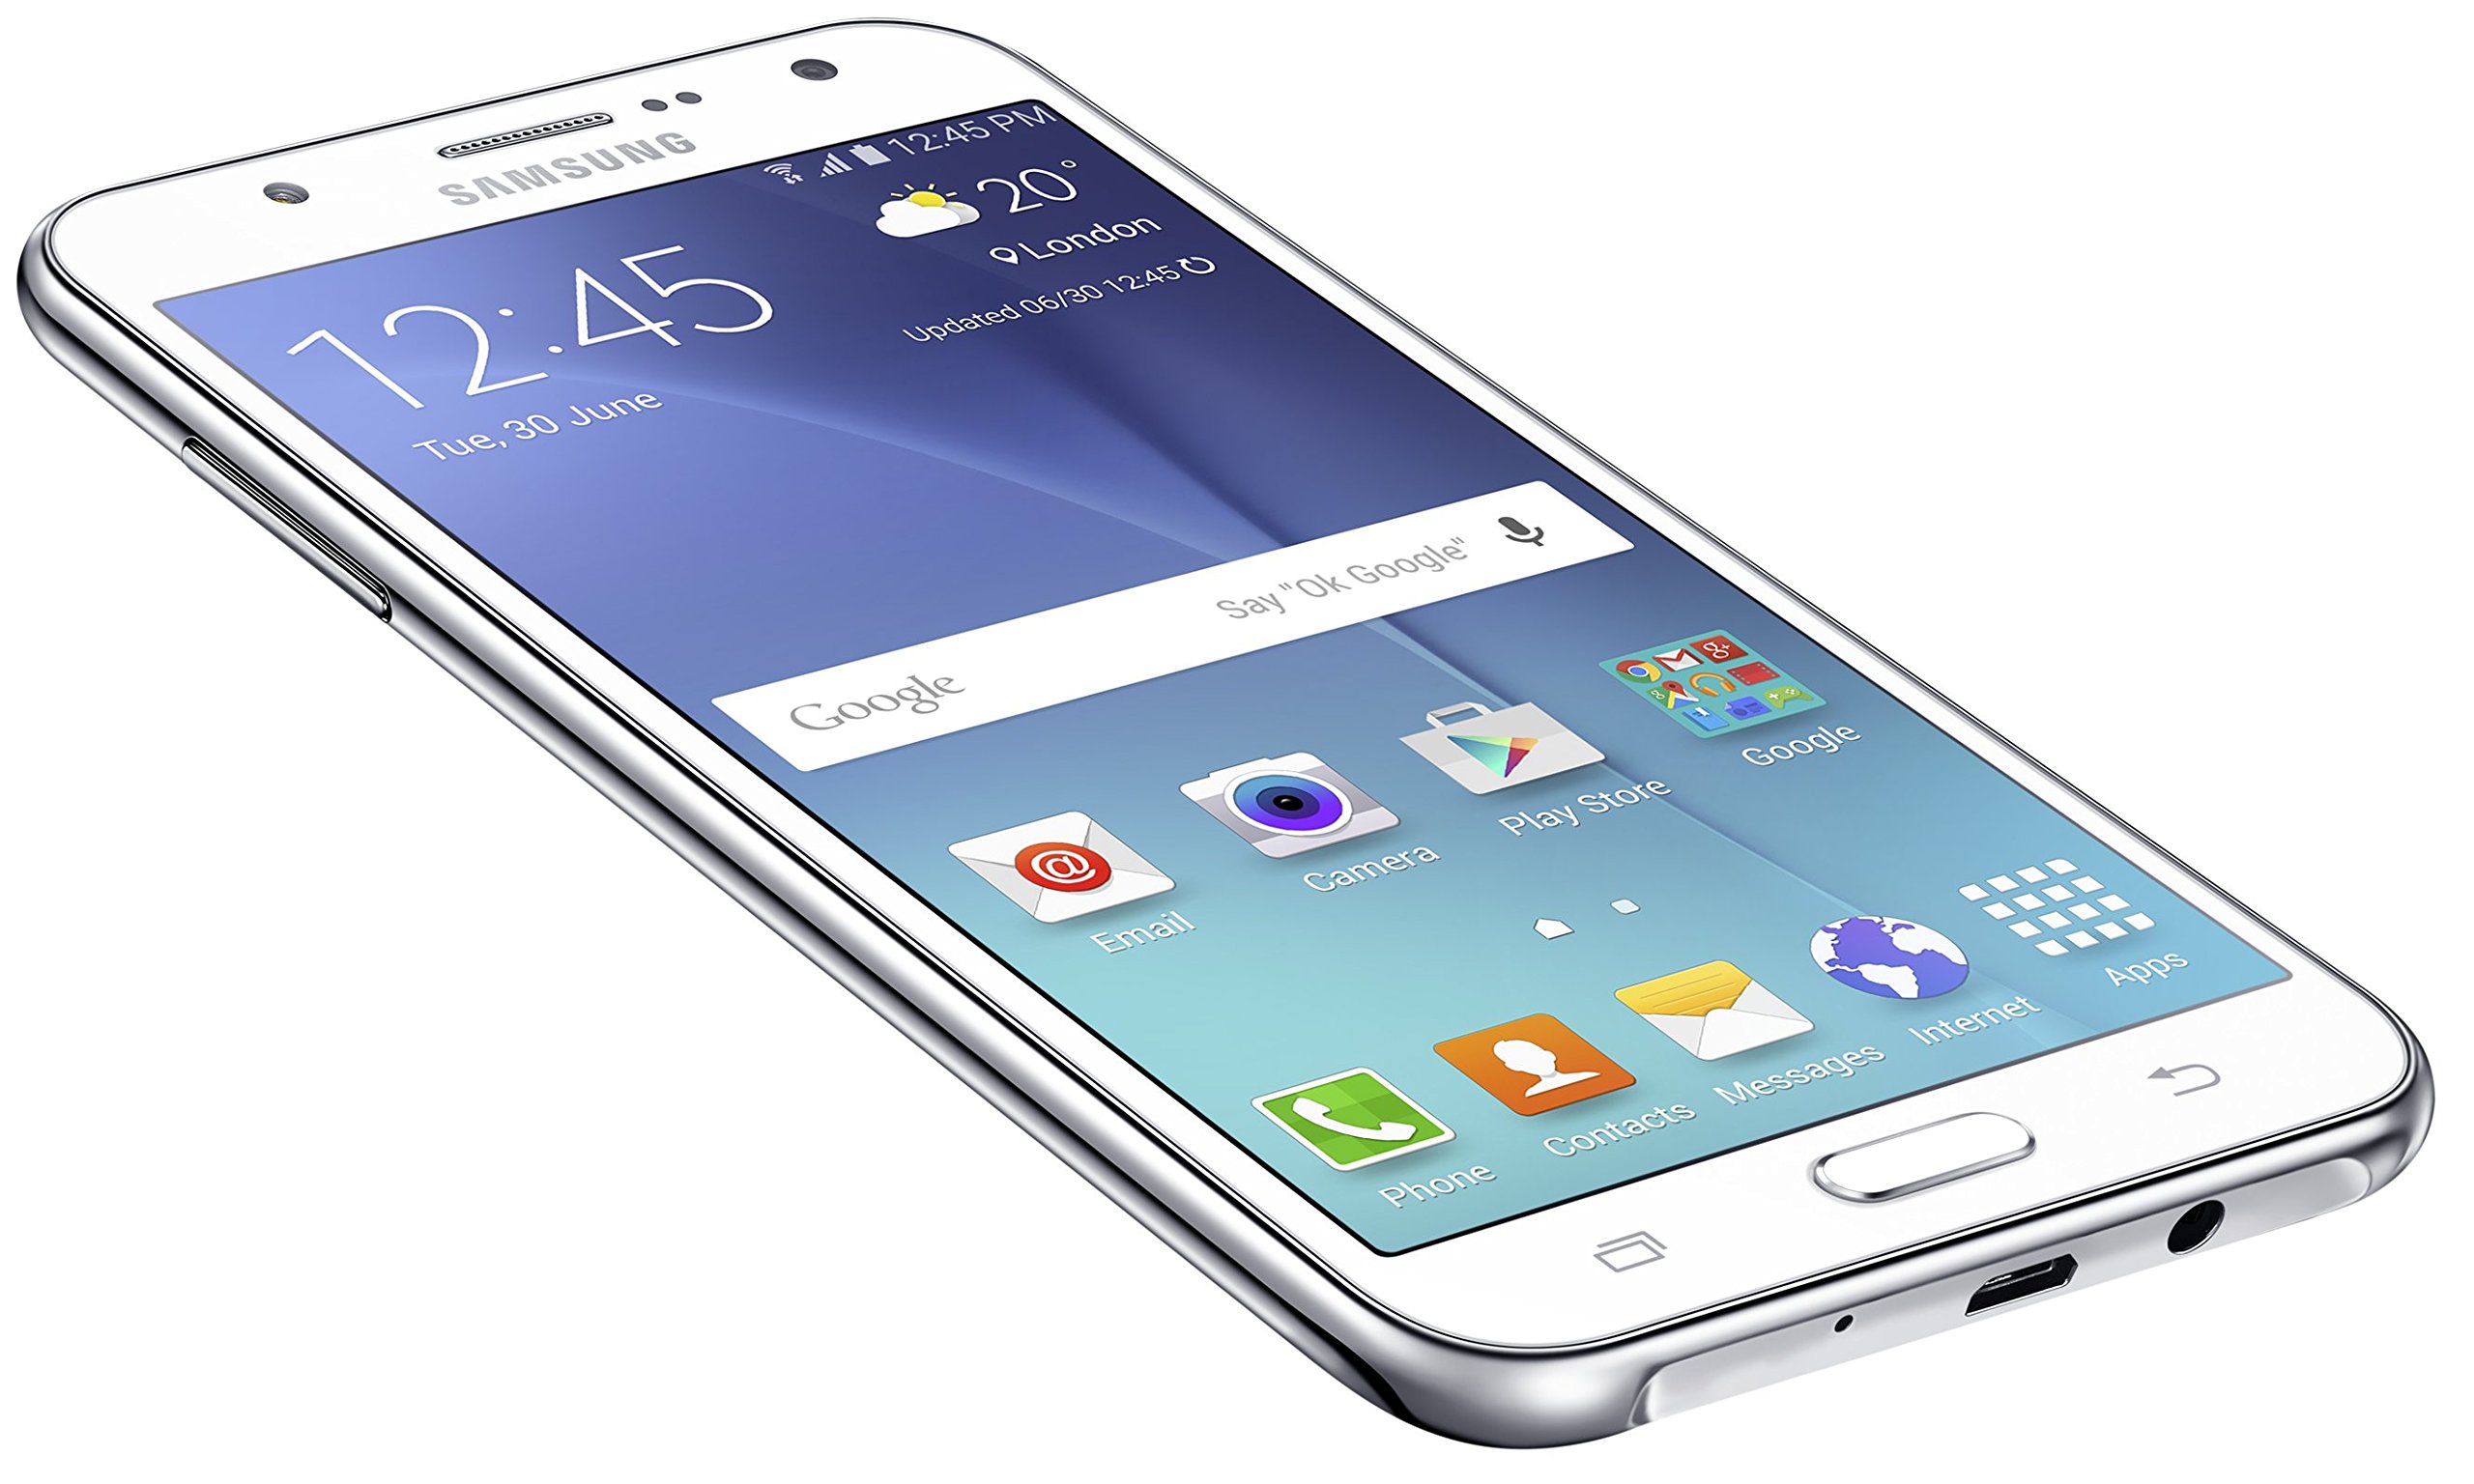 Samsung Galaxy J7 (16GB) J700F - 5.5